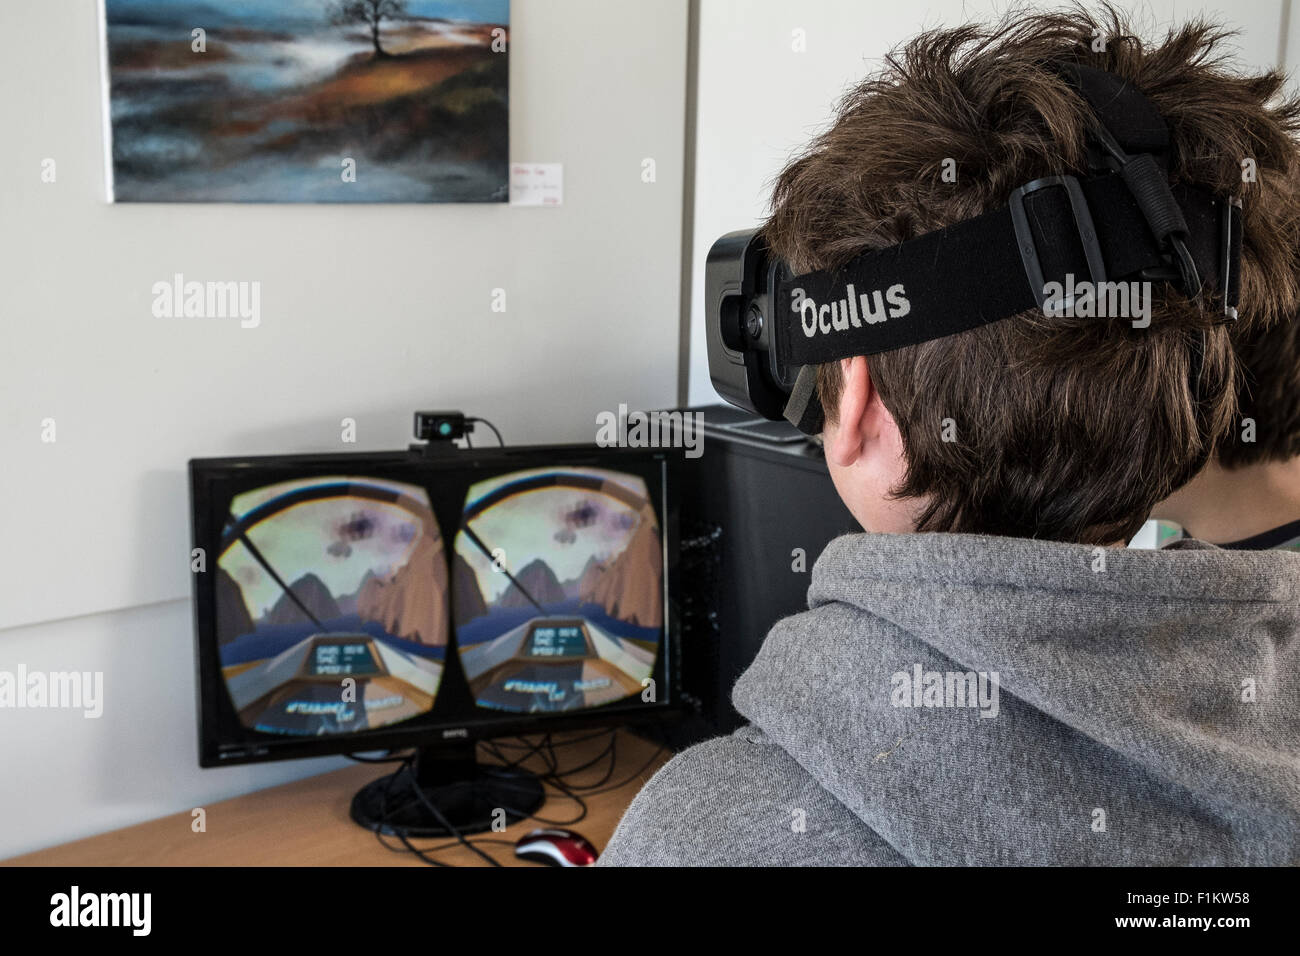 Teenage boy playing an Oculus Rift virtual reality device Stock Photo